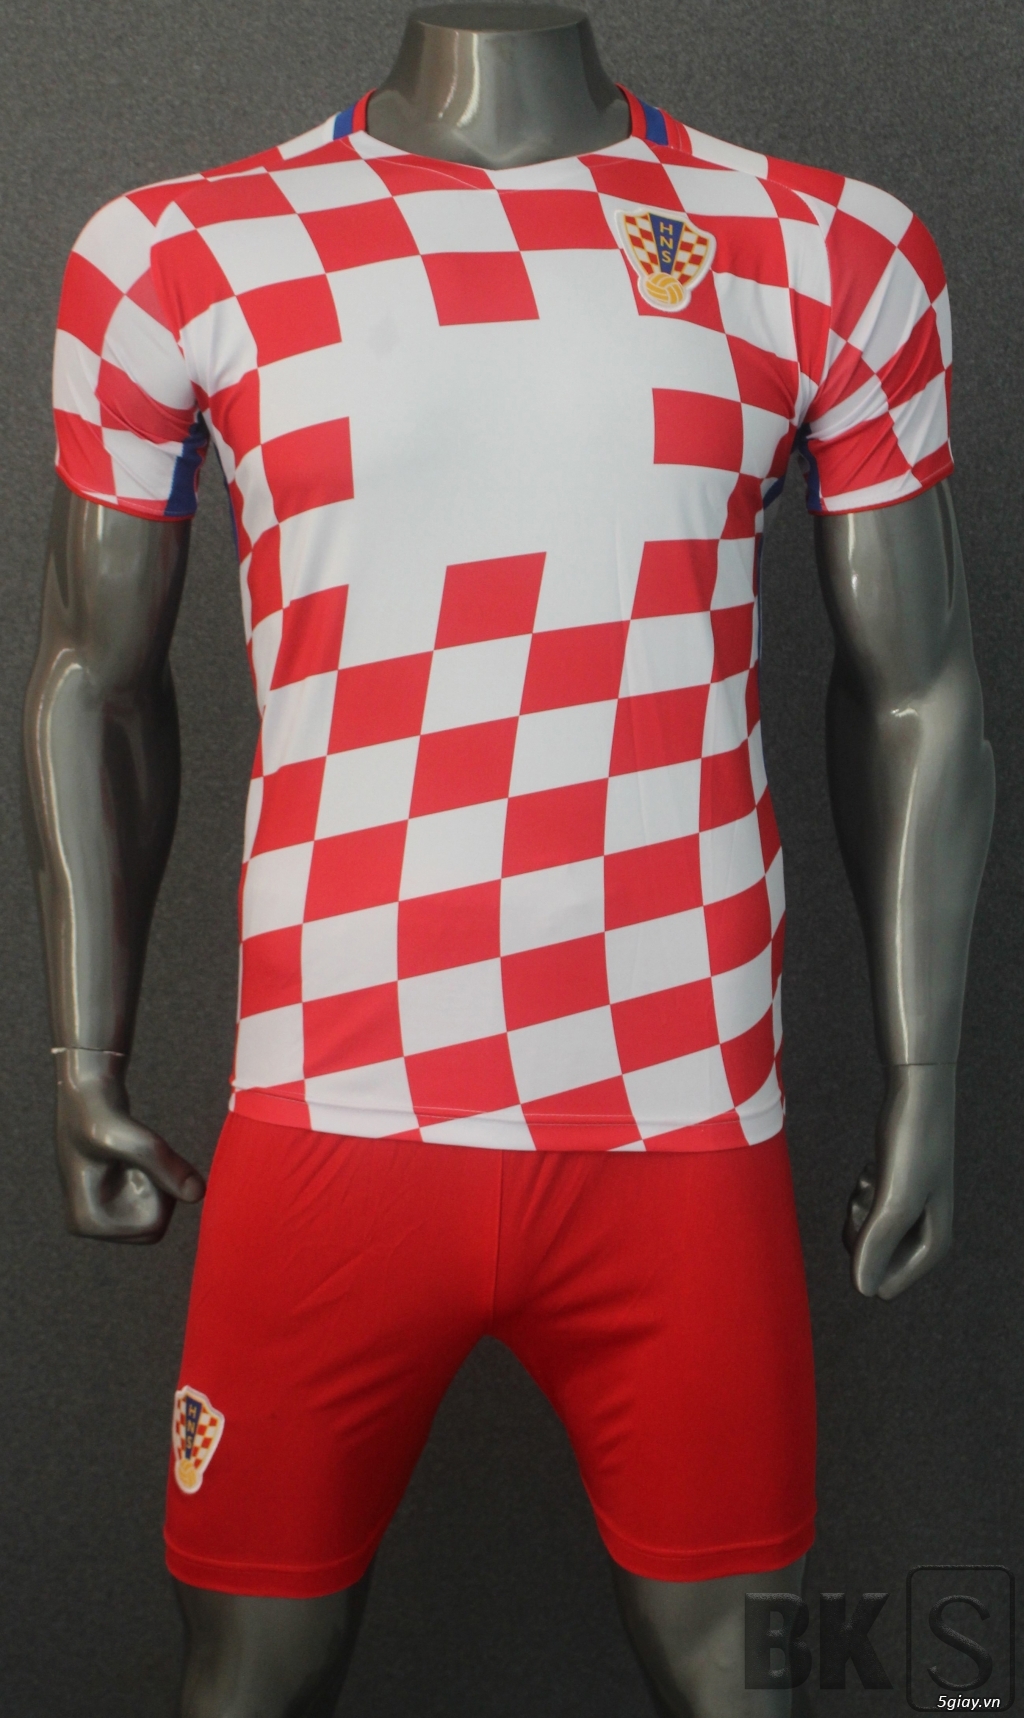 Áo bóng đá HP-địa chỉ gốc sản xuất trang phục thể thao số 1 Việt Nam - 41